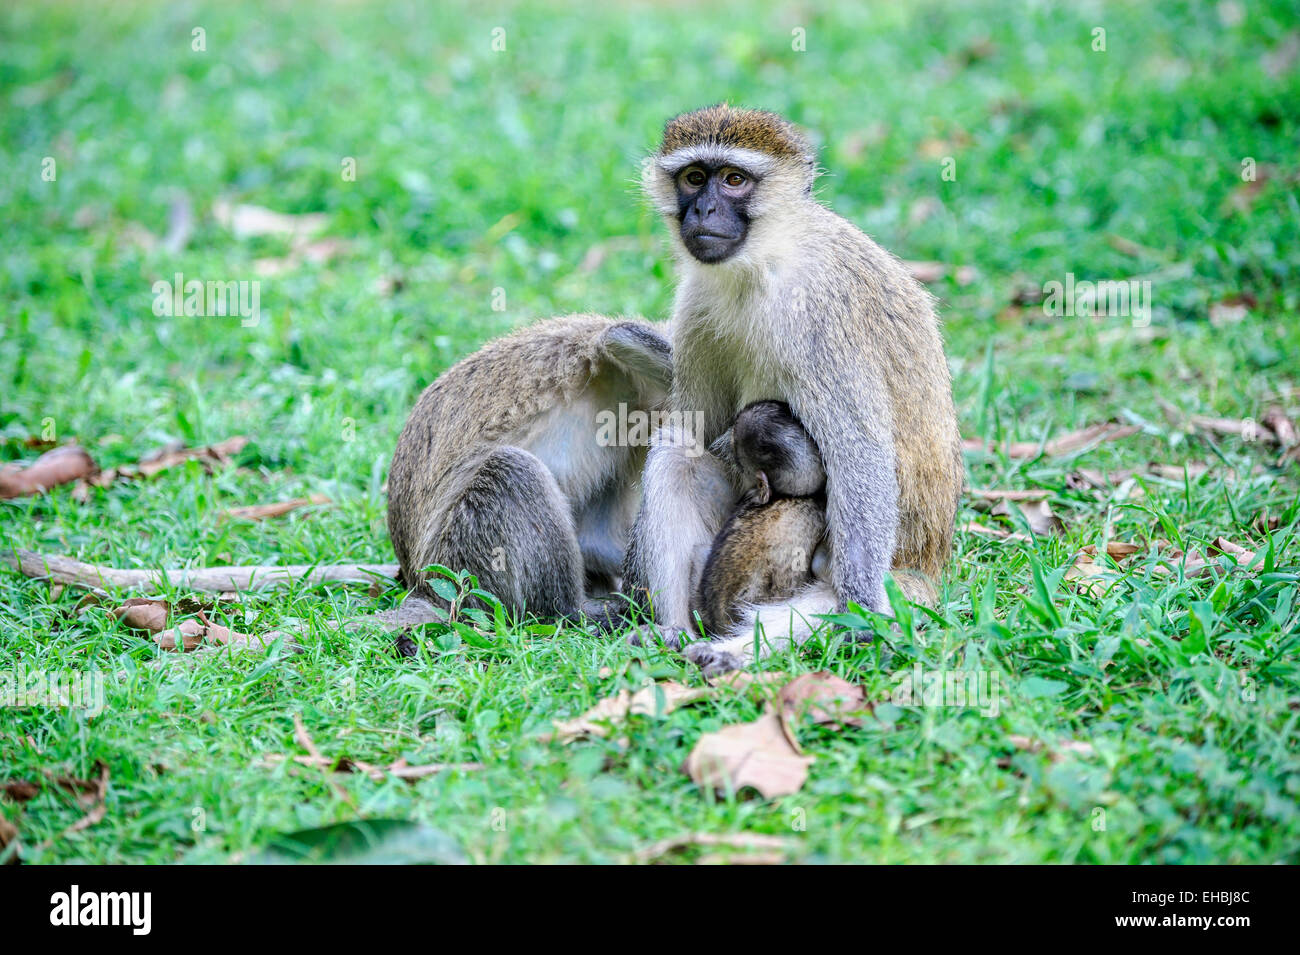 Erwachsenes Weibchen einen Vervet Affen, einer alten Welt Affe präparierte mit ihrem Nachwuchs, klammerte sich an ihr. Stockfoto